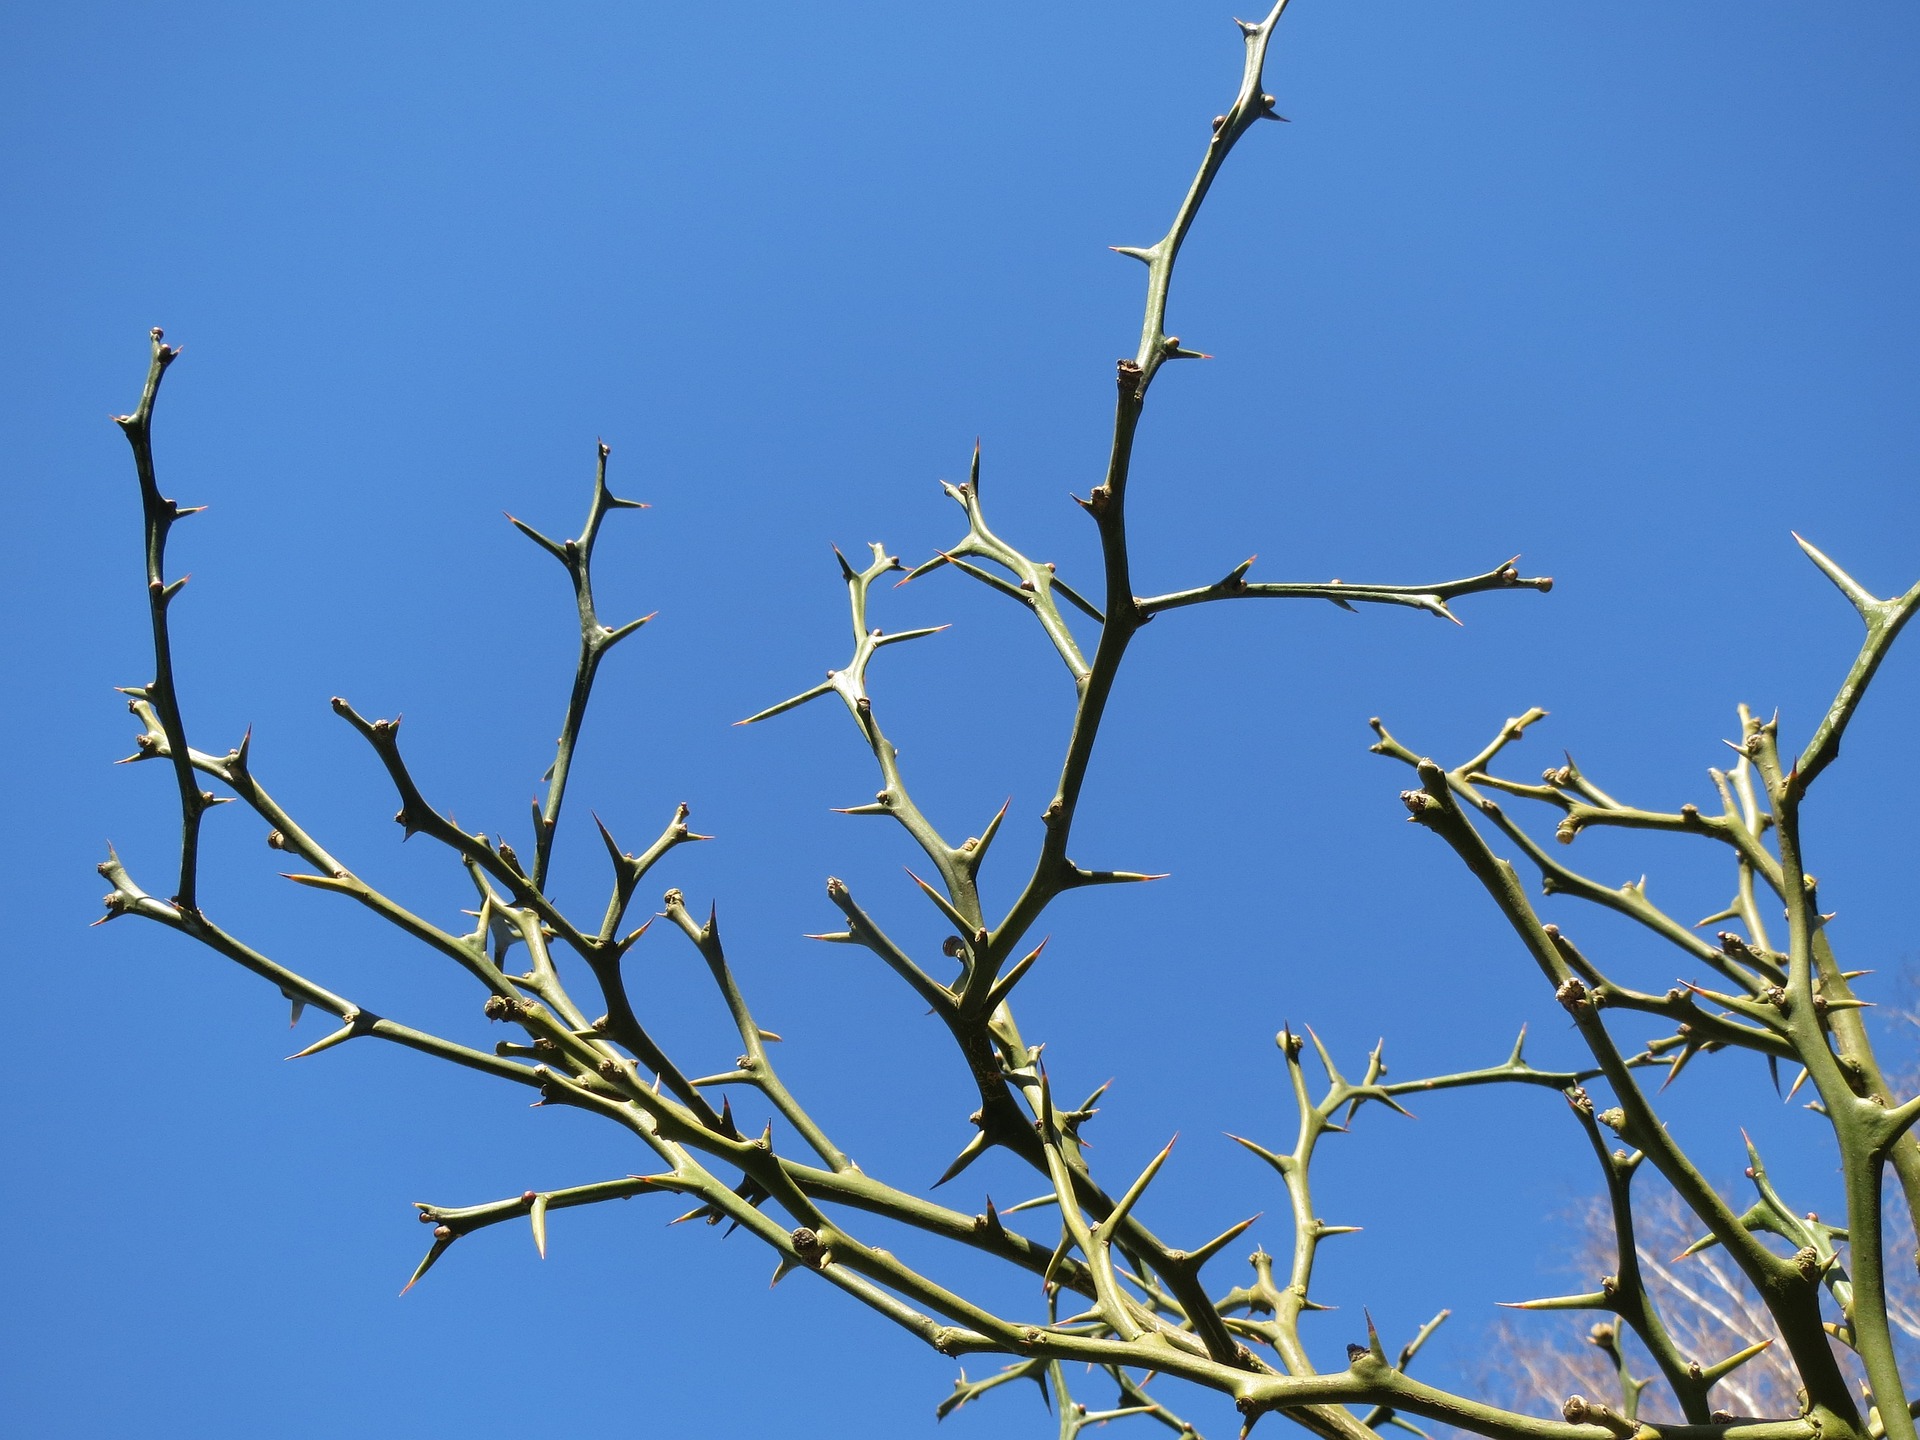 야생의 탱자나무의 줄기에 있는 날카로운 가시를 파란하늘과 함께 확대하여 찍은 사진